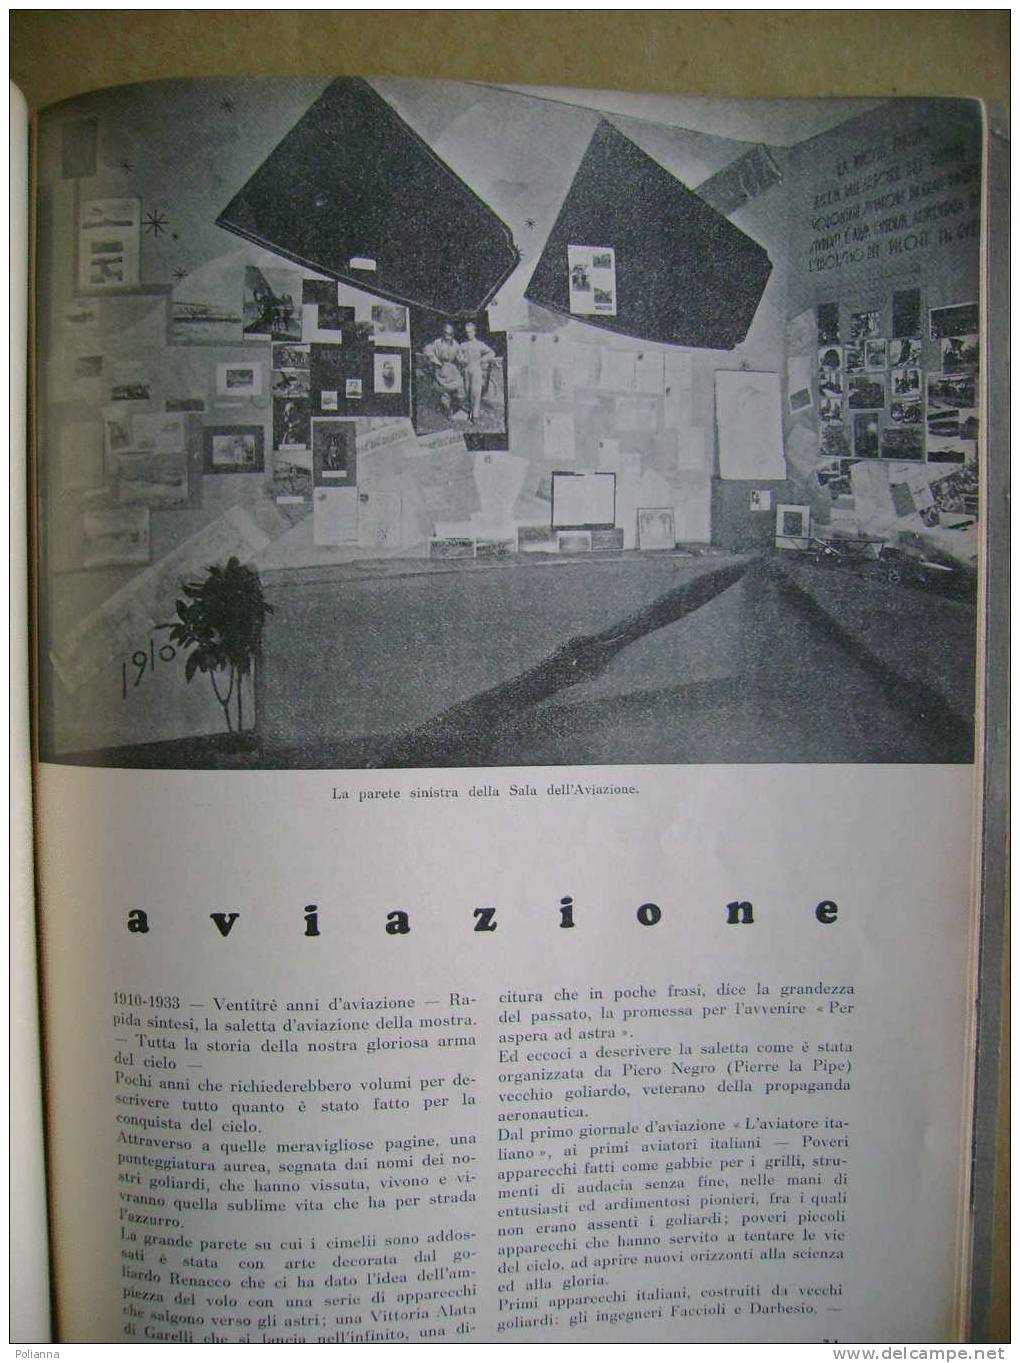 PAF/46 Curreli DENTRO DI NOI LA NEBBIA Approdo 1972 / Piemontese - Disegni Di Eugenio Comencini - Poetry